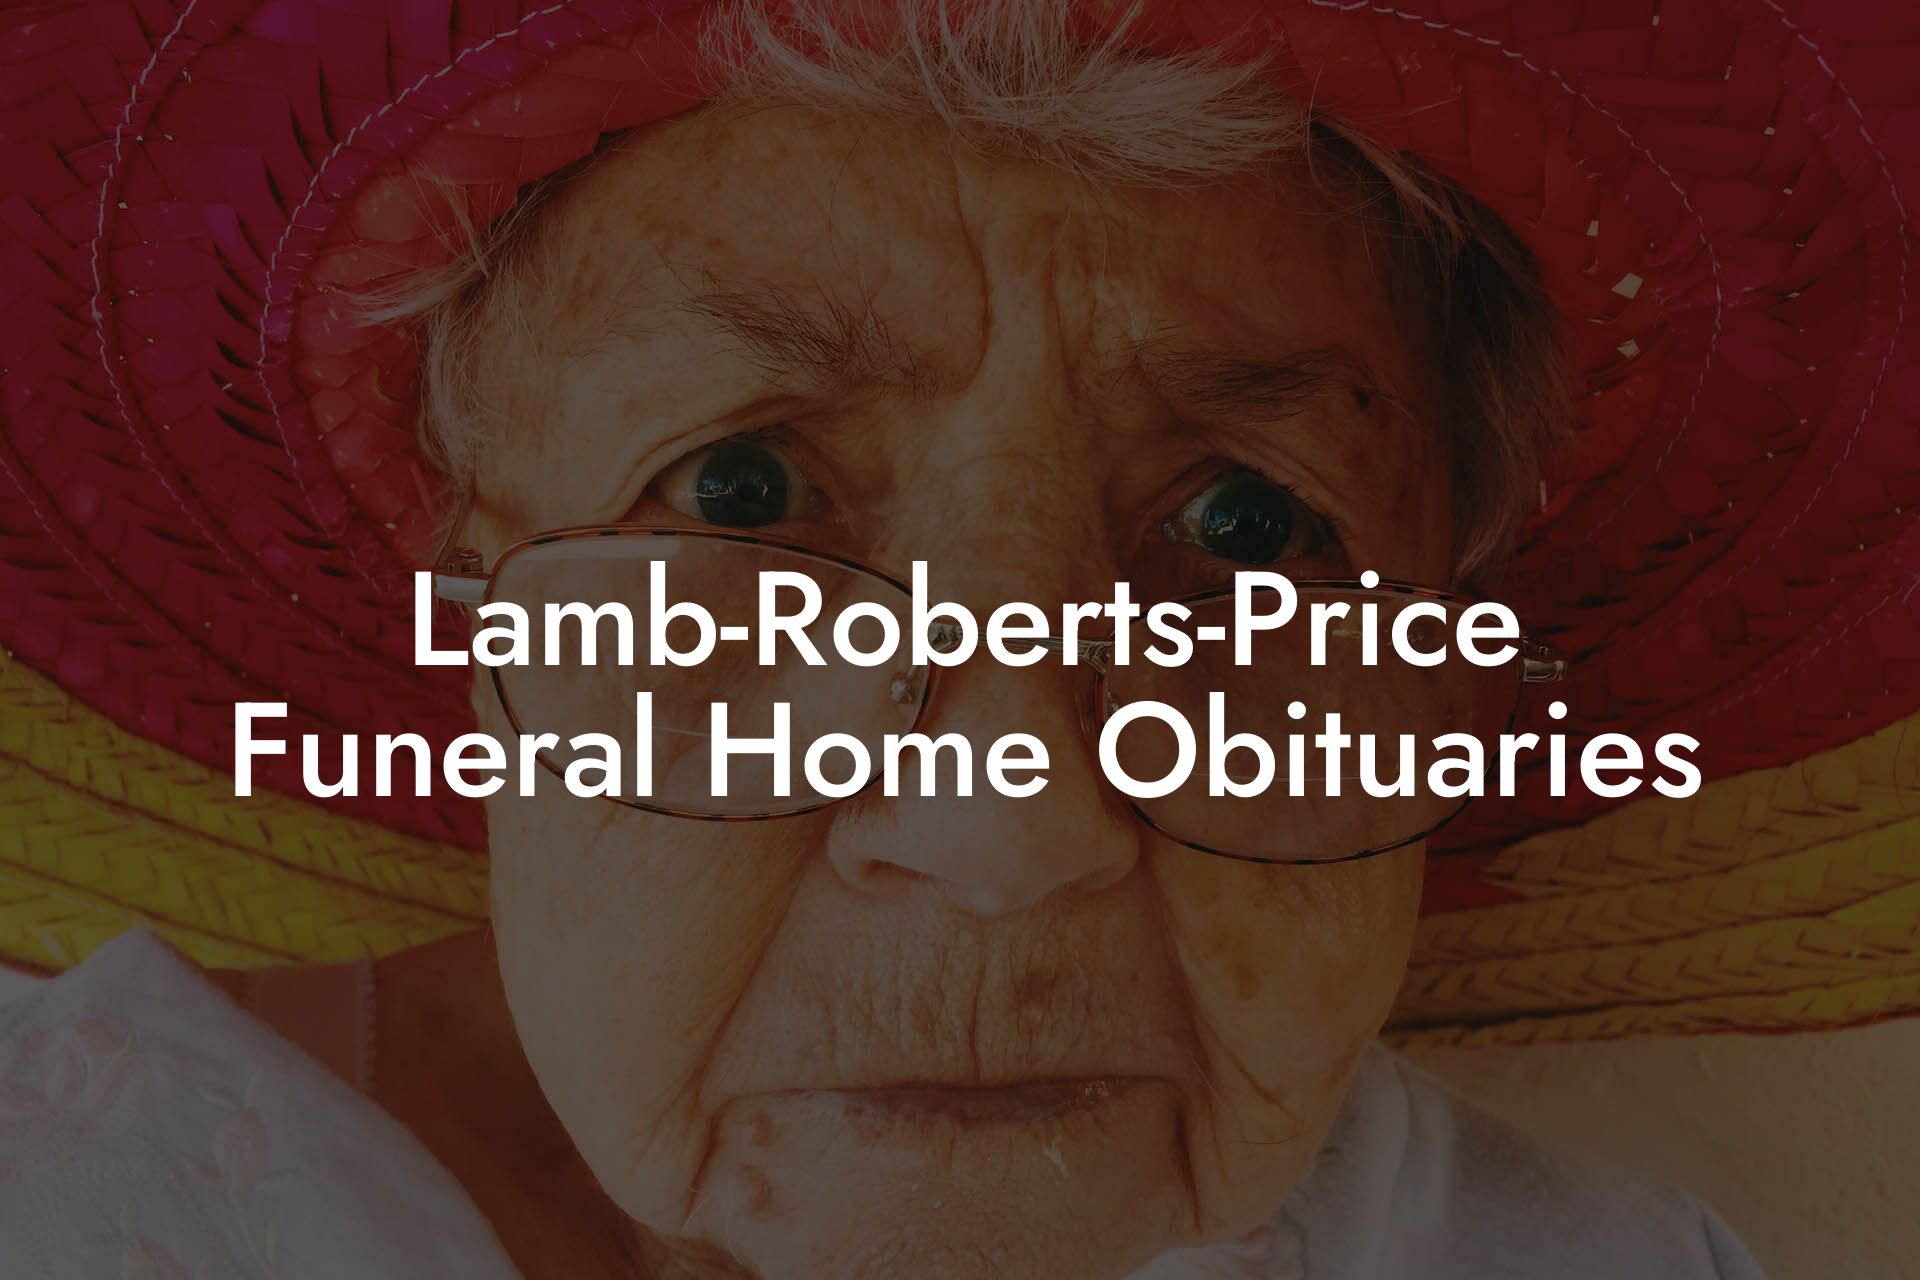 Lamb-Roberts-Price Funeral Home Obituaries